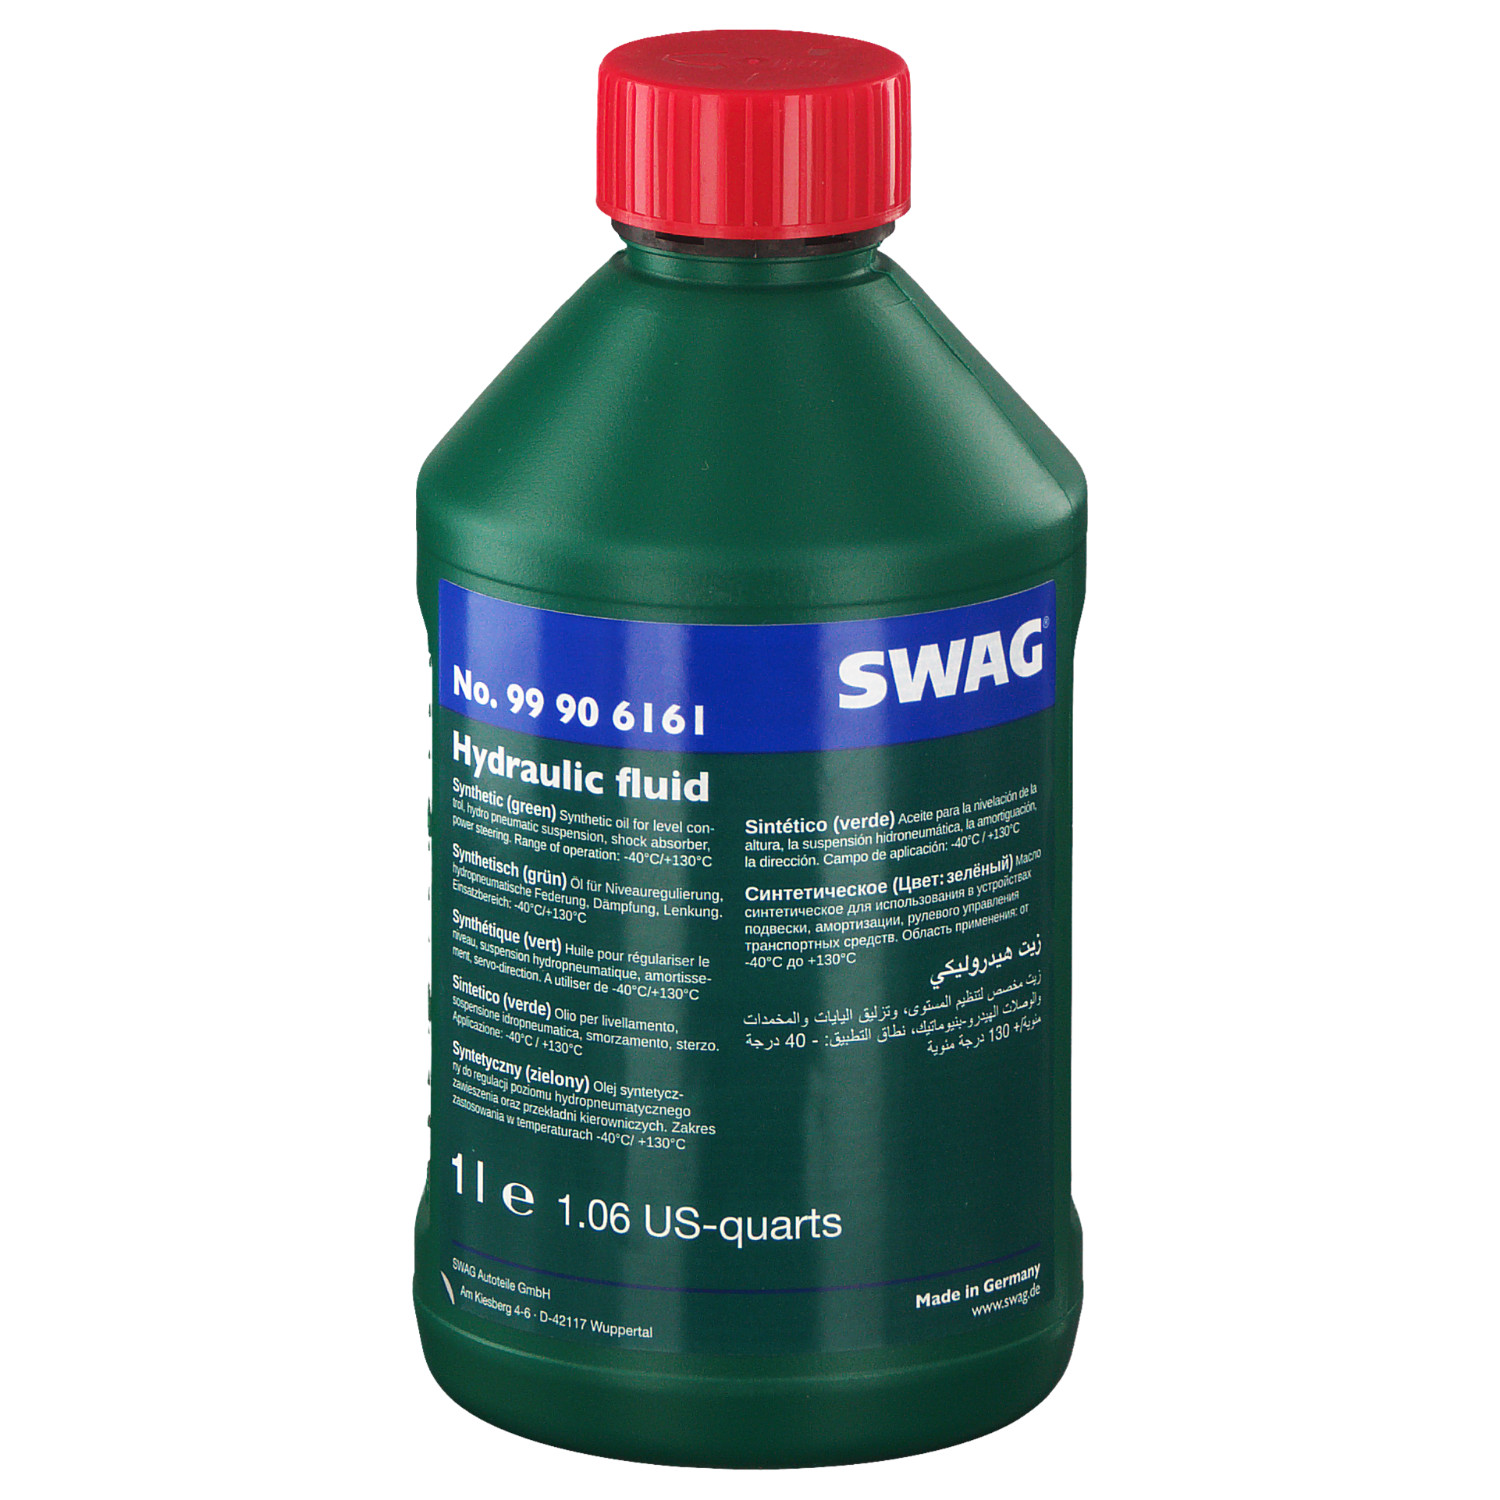 Жидкость гидросистемы CHF 11S синтетическая зеленая 1л - Swag 99 90 6161